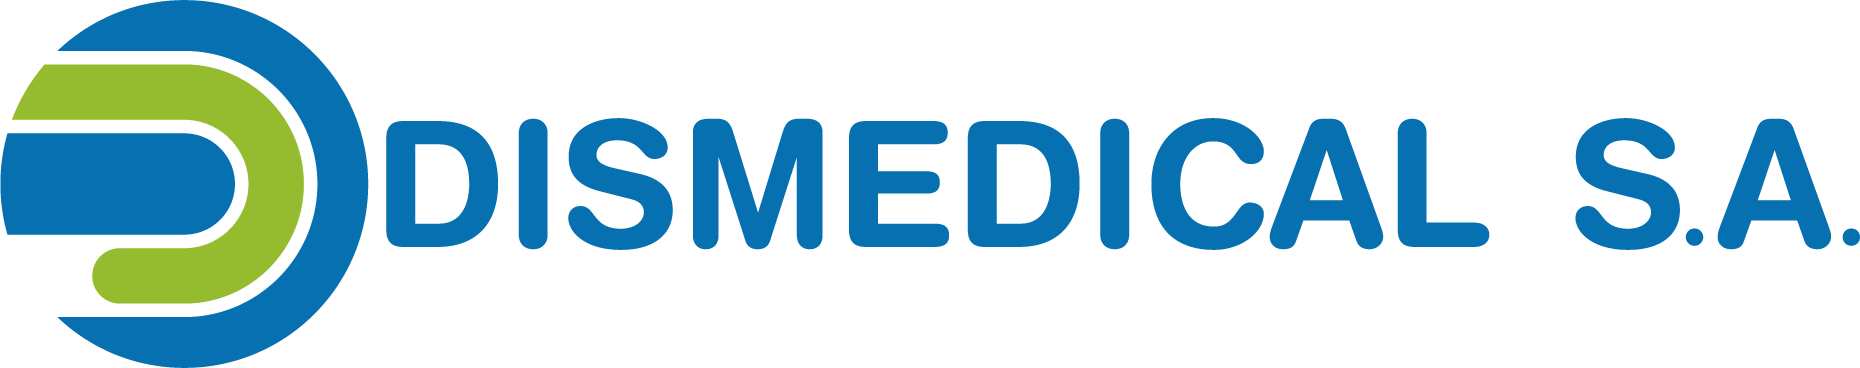 dismedical logo